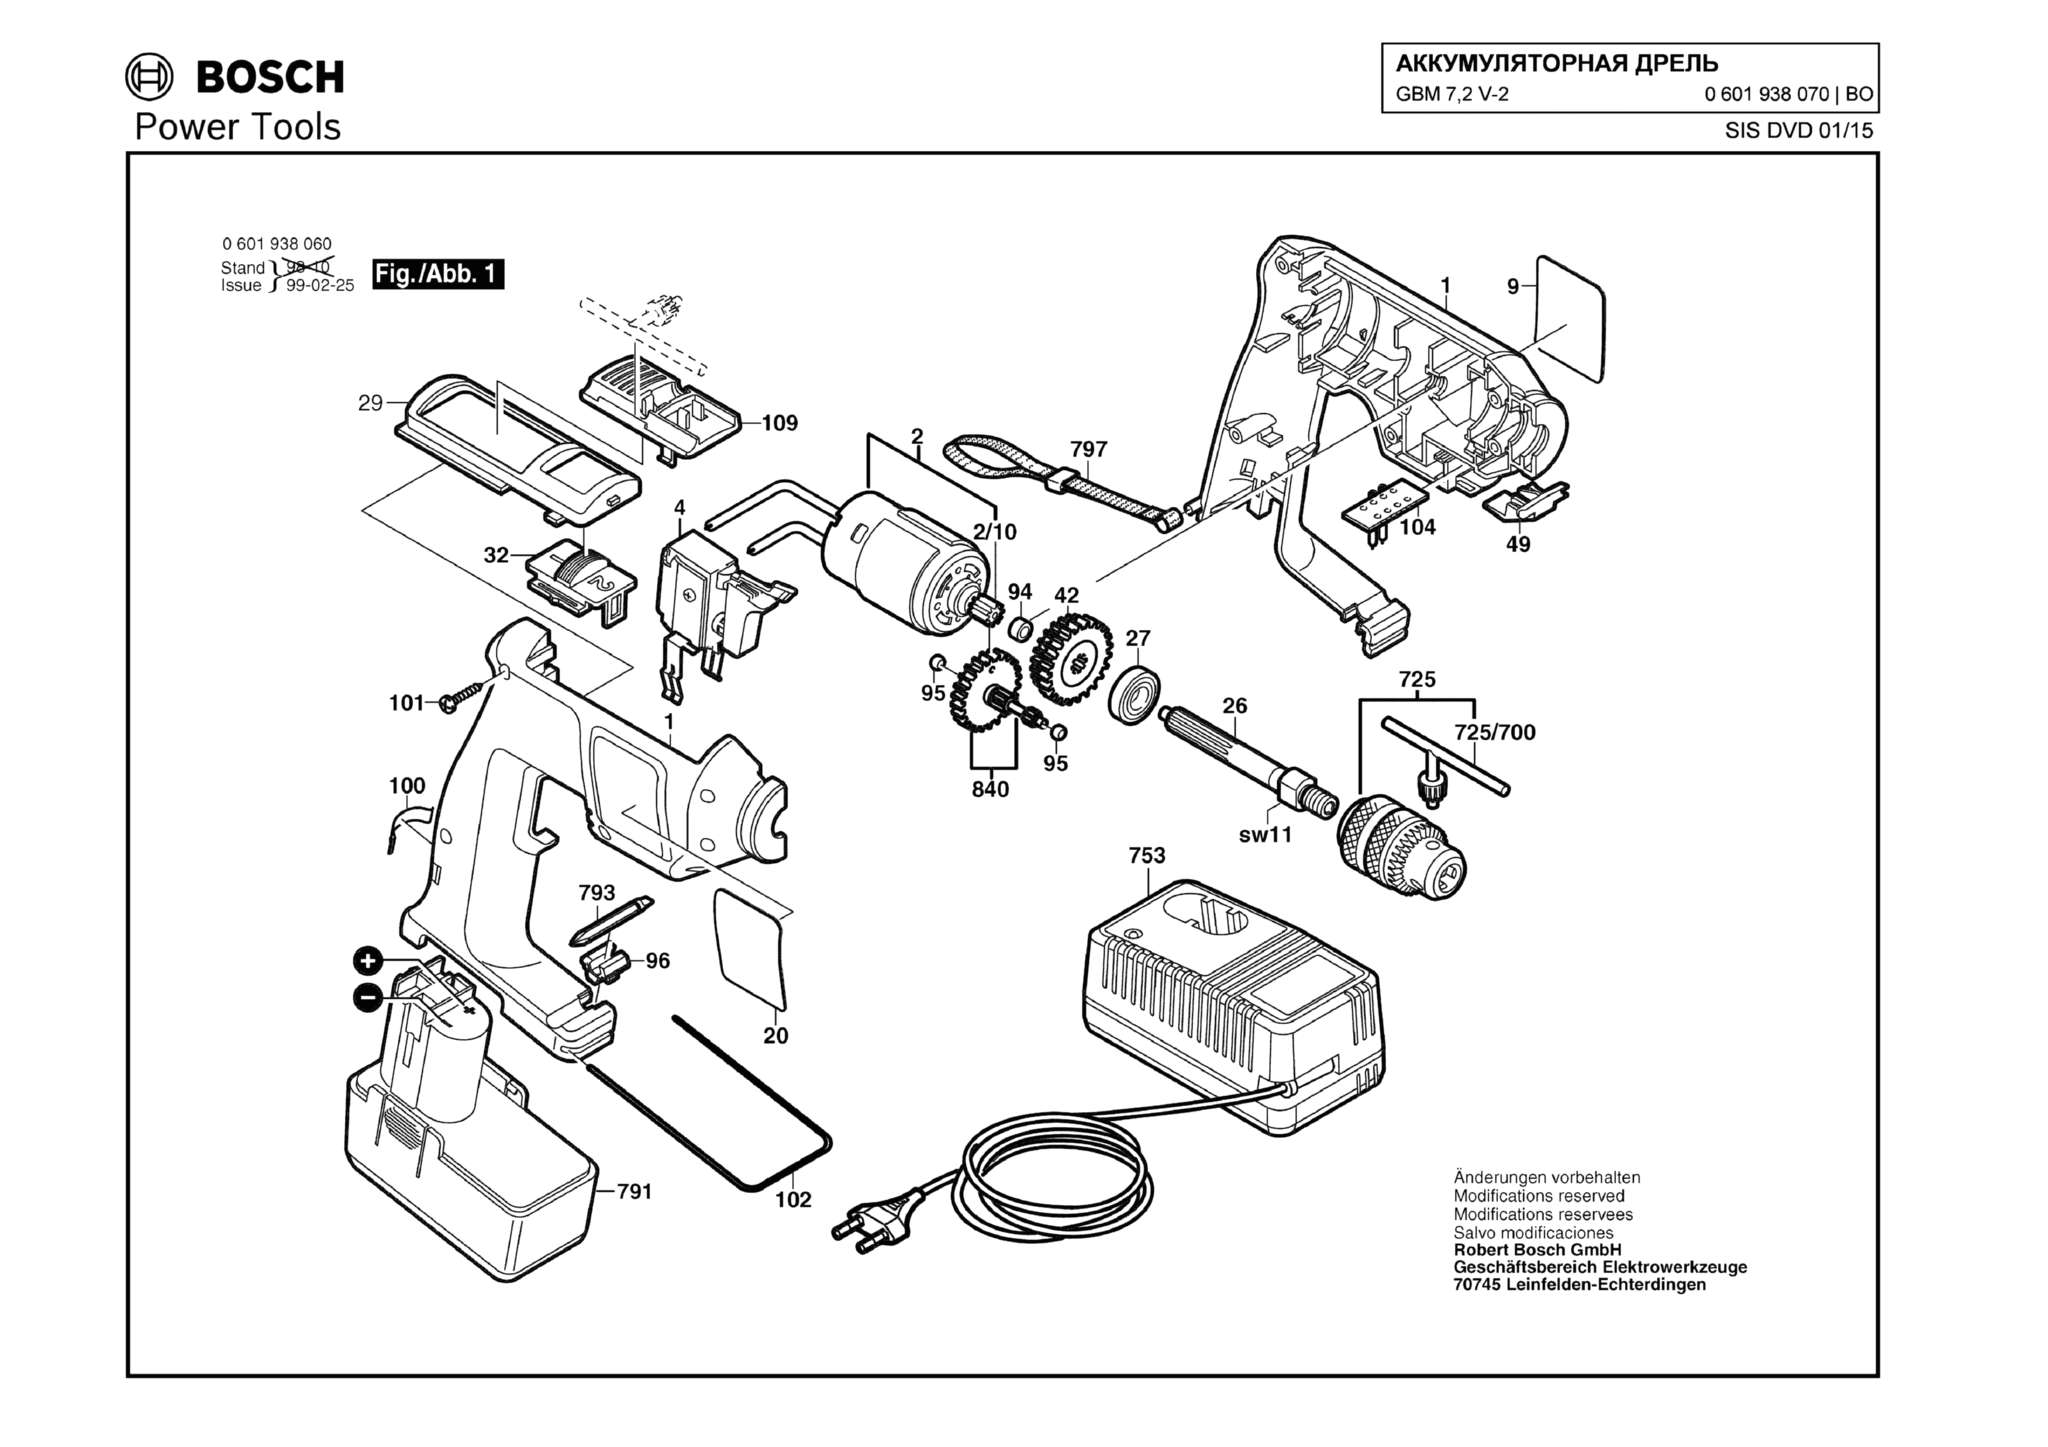 Запчасти, схема и деталировка Bosch GBM 7,2 V-2 (ТИП 0601938070)